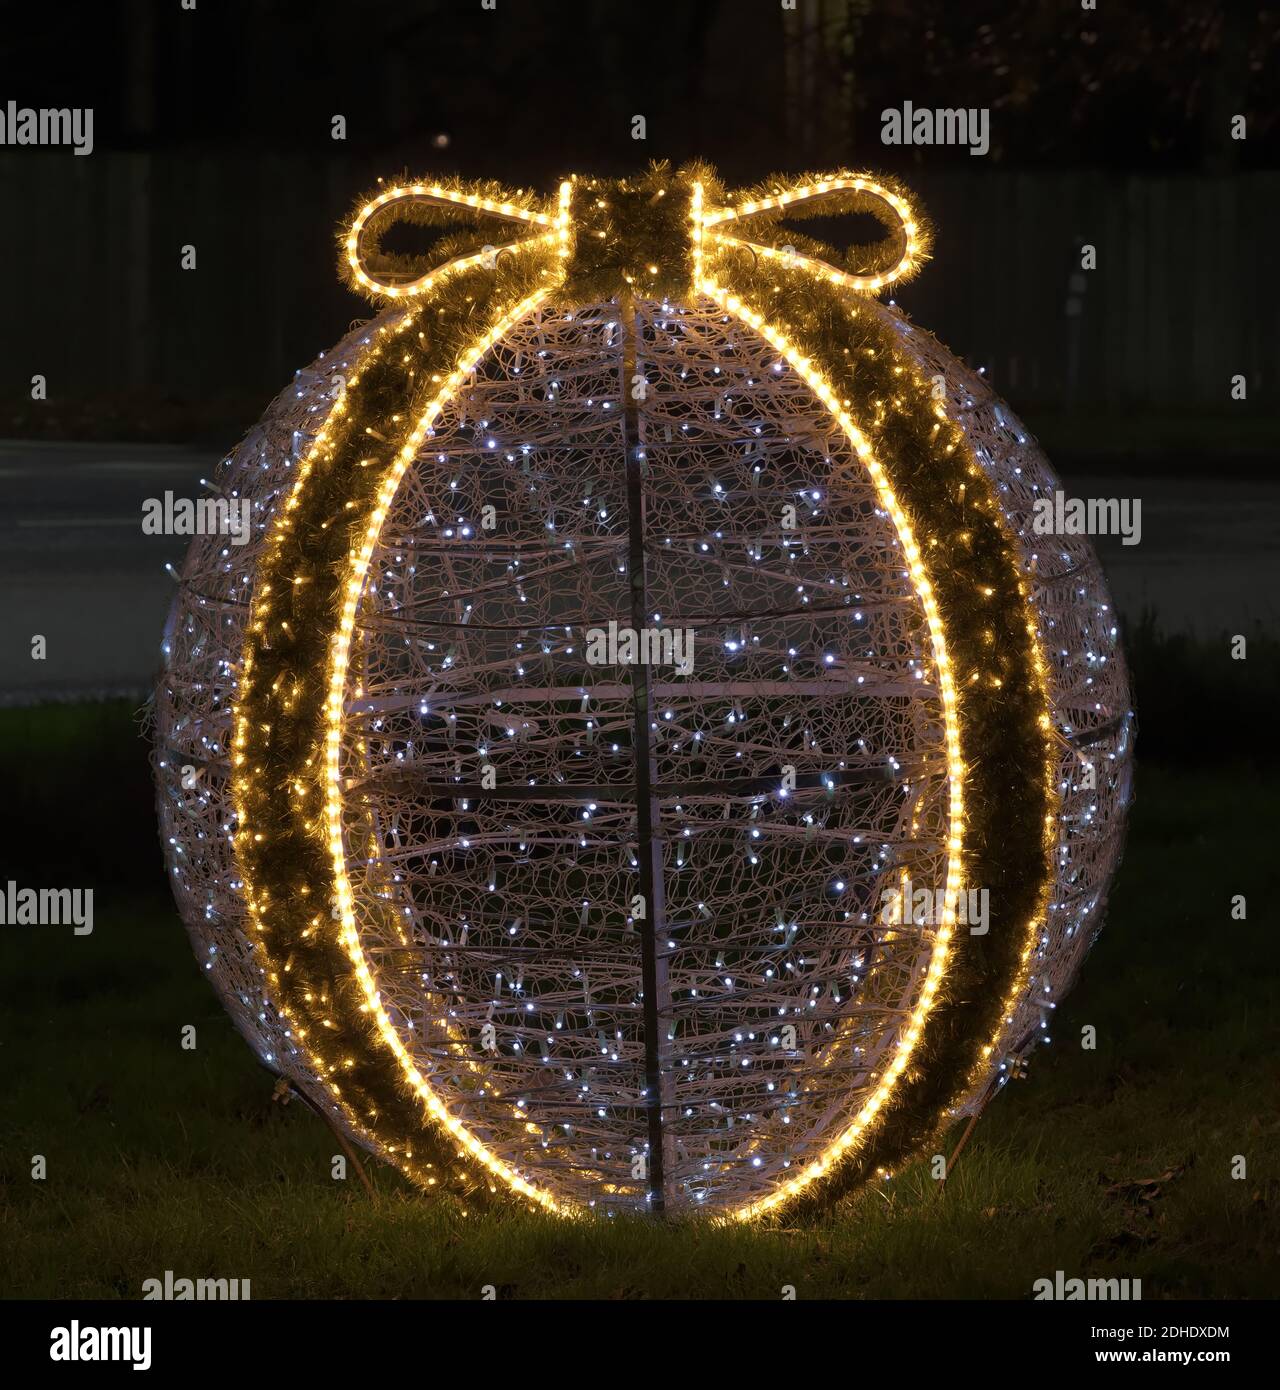 Bola de decoración de Navidad iluminada en medio de un círculo de tráfico en Djursholms Ösby, Estocolmo, Suecia, por la noche Foto de stock